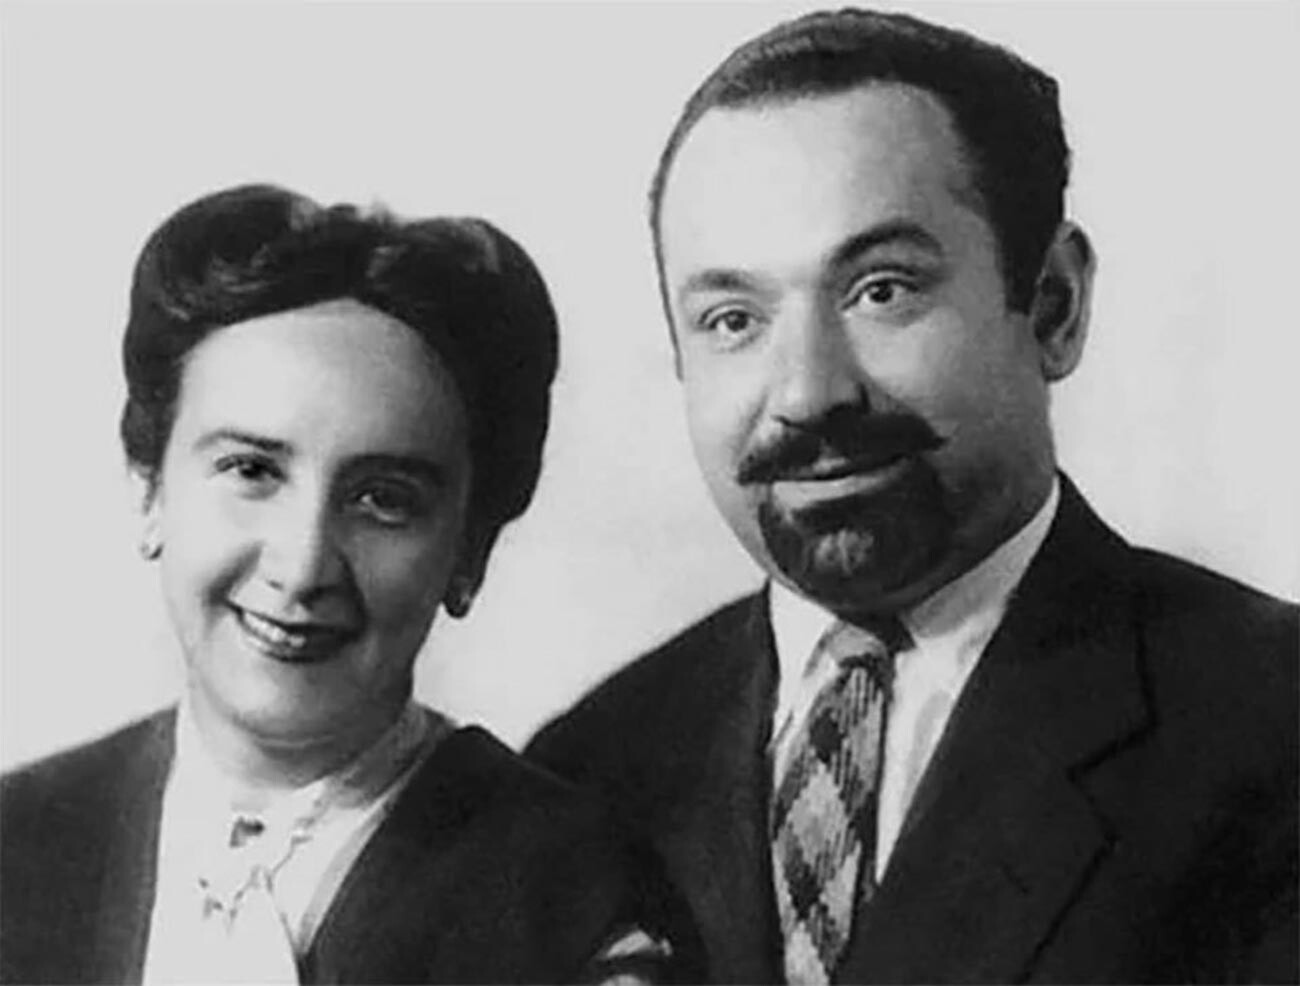 El matrimonio Grigulévich (Castro) durante su estancia en Brasil en 1946.